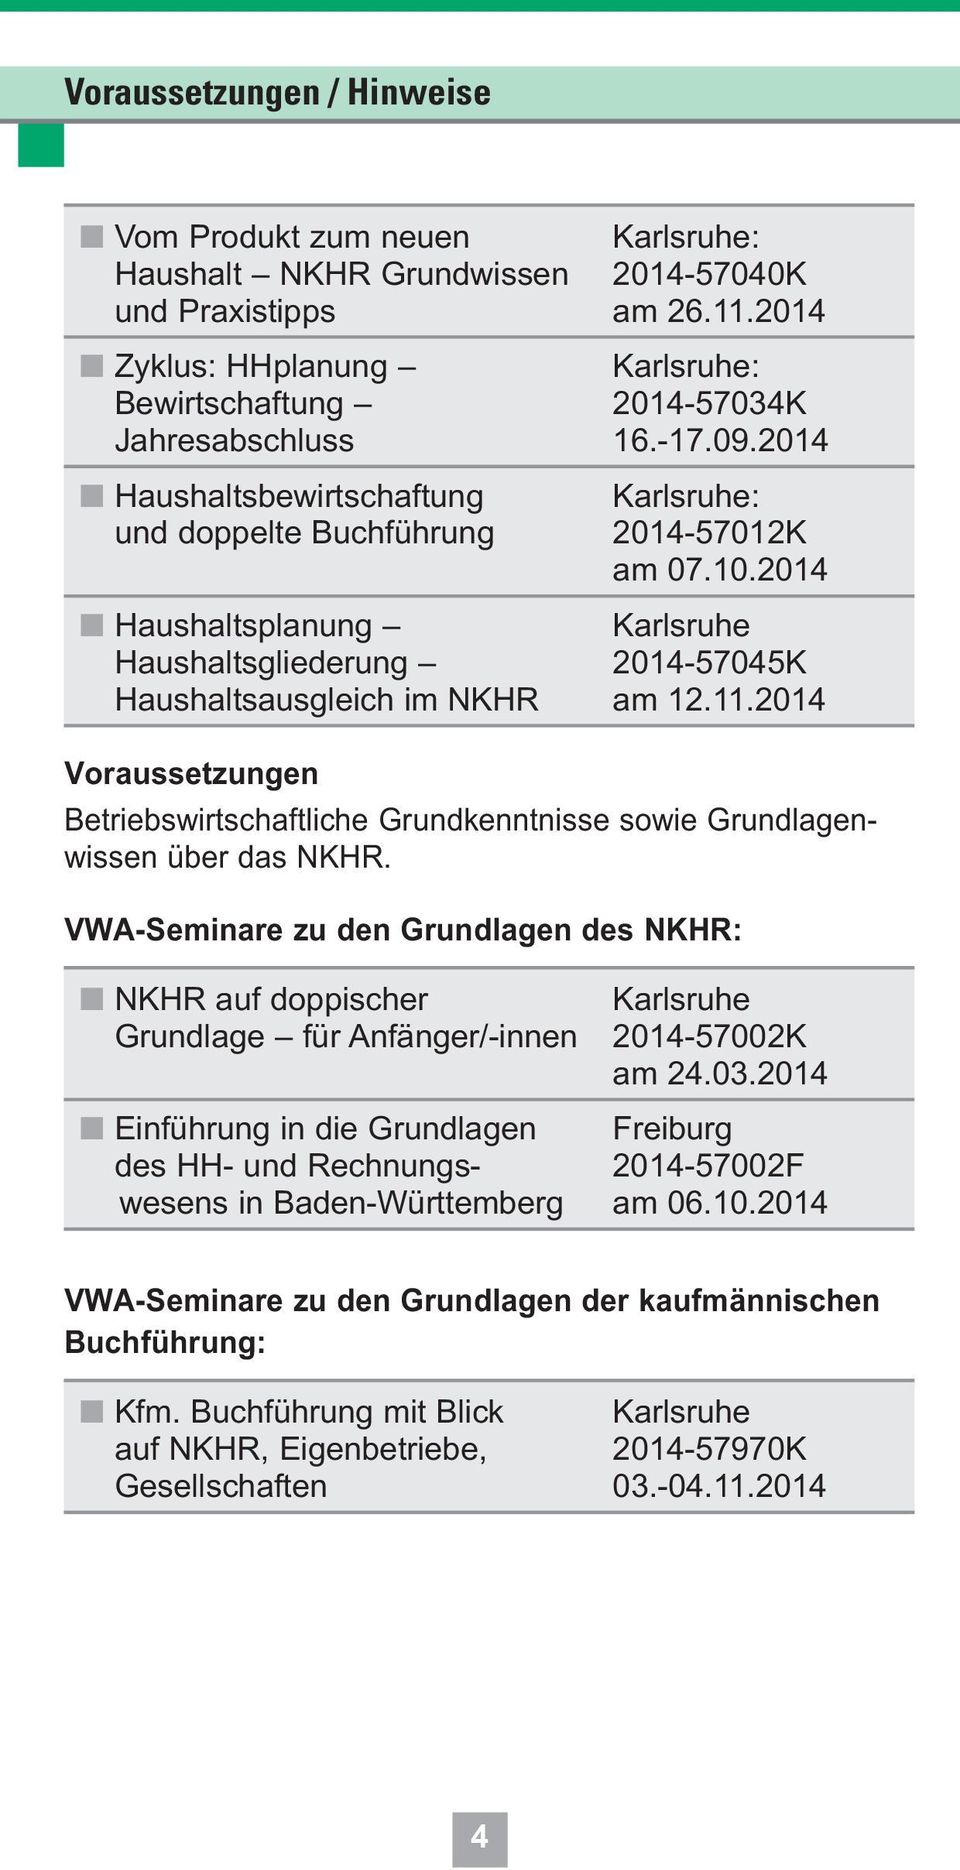 2014 Haushaltsplanung Karlsruhe Haushaltsgliederung 2014-57045K Haushaltsausgleich im NKHR am 12.11.2014 Voraussetzungen Betriebswirtschaftliche Grundkenntnisse sowie Grundlagenwissen über das NKHR.